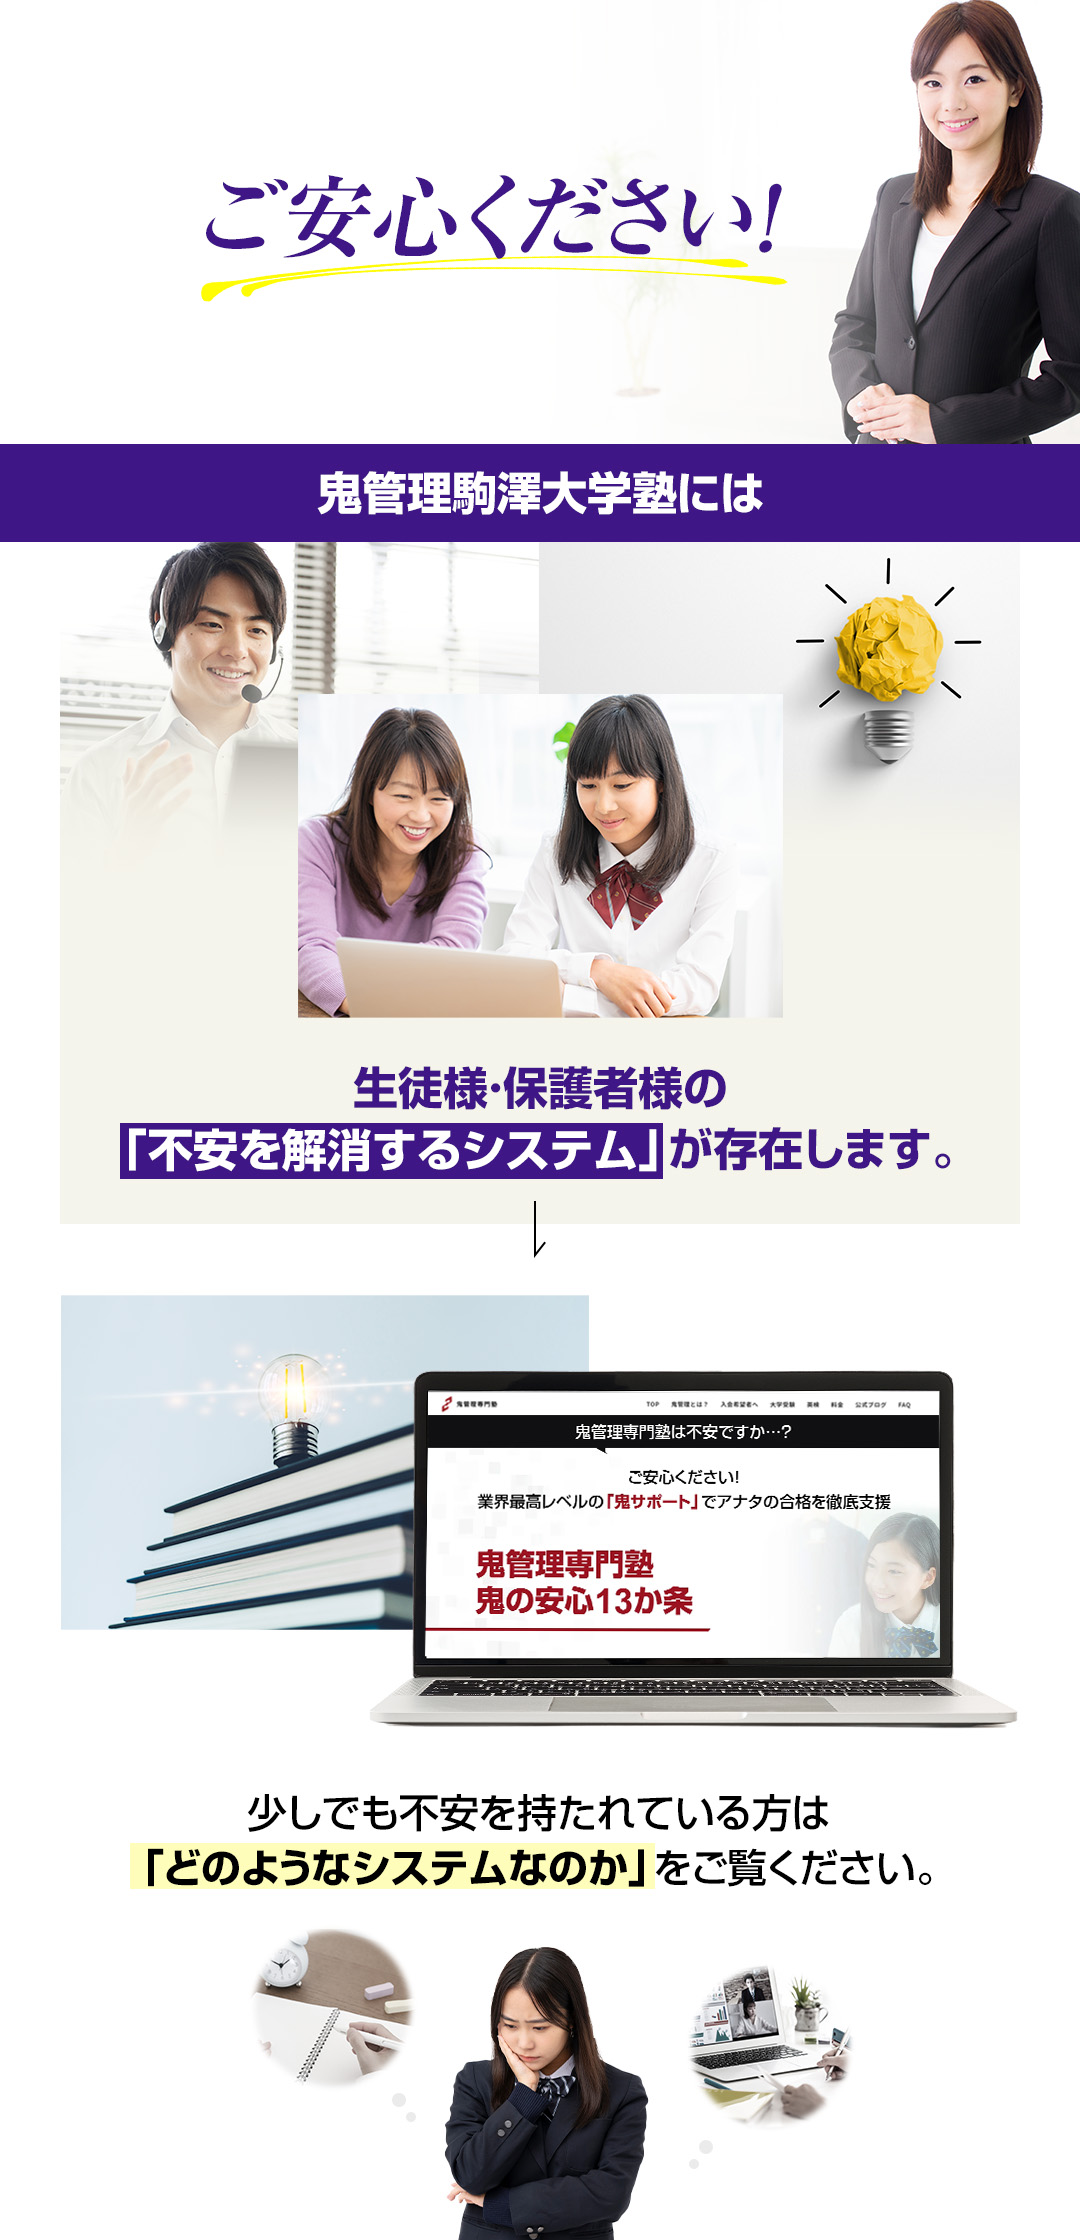 鬼管理駒澤大学塾には生徒様・保護者様の「不安を解消するシステム」が存在します